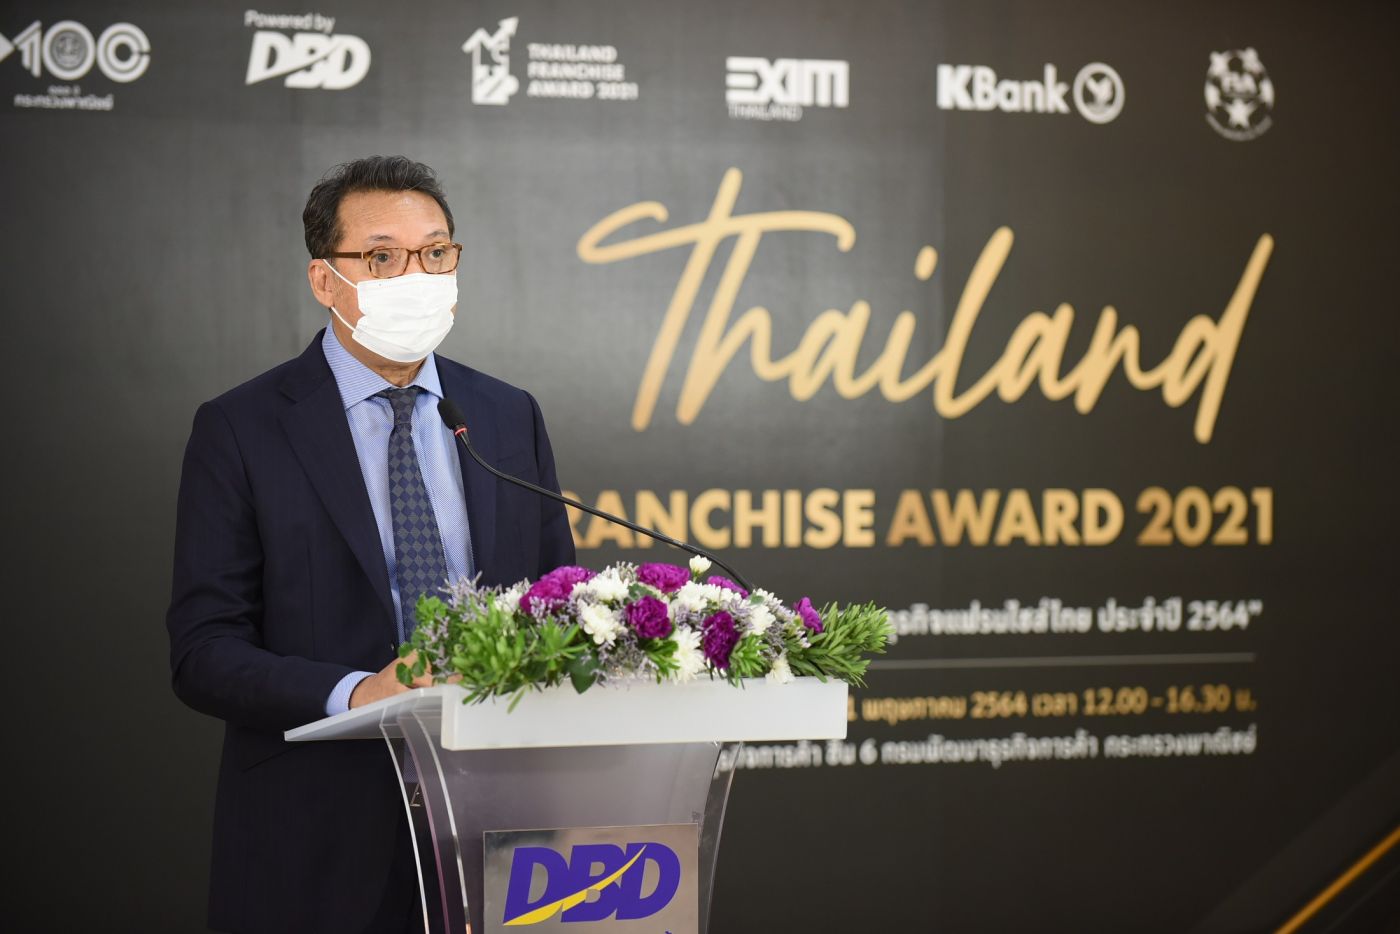 กรมพัฒนาธุรกิจการค้า ใช้ธุรกิจแฟรนไชส์ ‘สร้างงาน สร้างอาชีพ สร้างรายได้’ ช่วยเหลือประชาชนที่ได้รับผลกระทบจากการแพร่ระบาดของโรคโควิด-19 พร้อมจัดงาน Thailand Franchise Award 2021 : TFA2021 สร้างความเชื่อมั่นให้ธุรกิจ